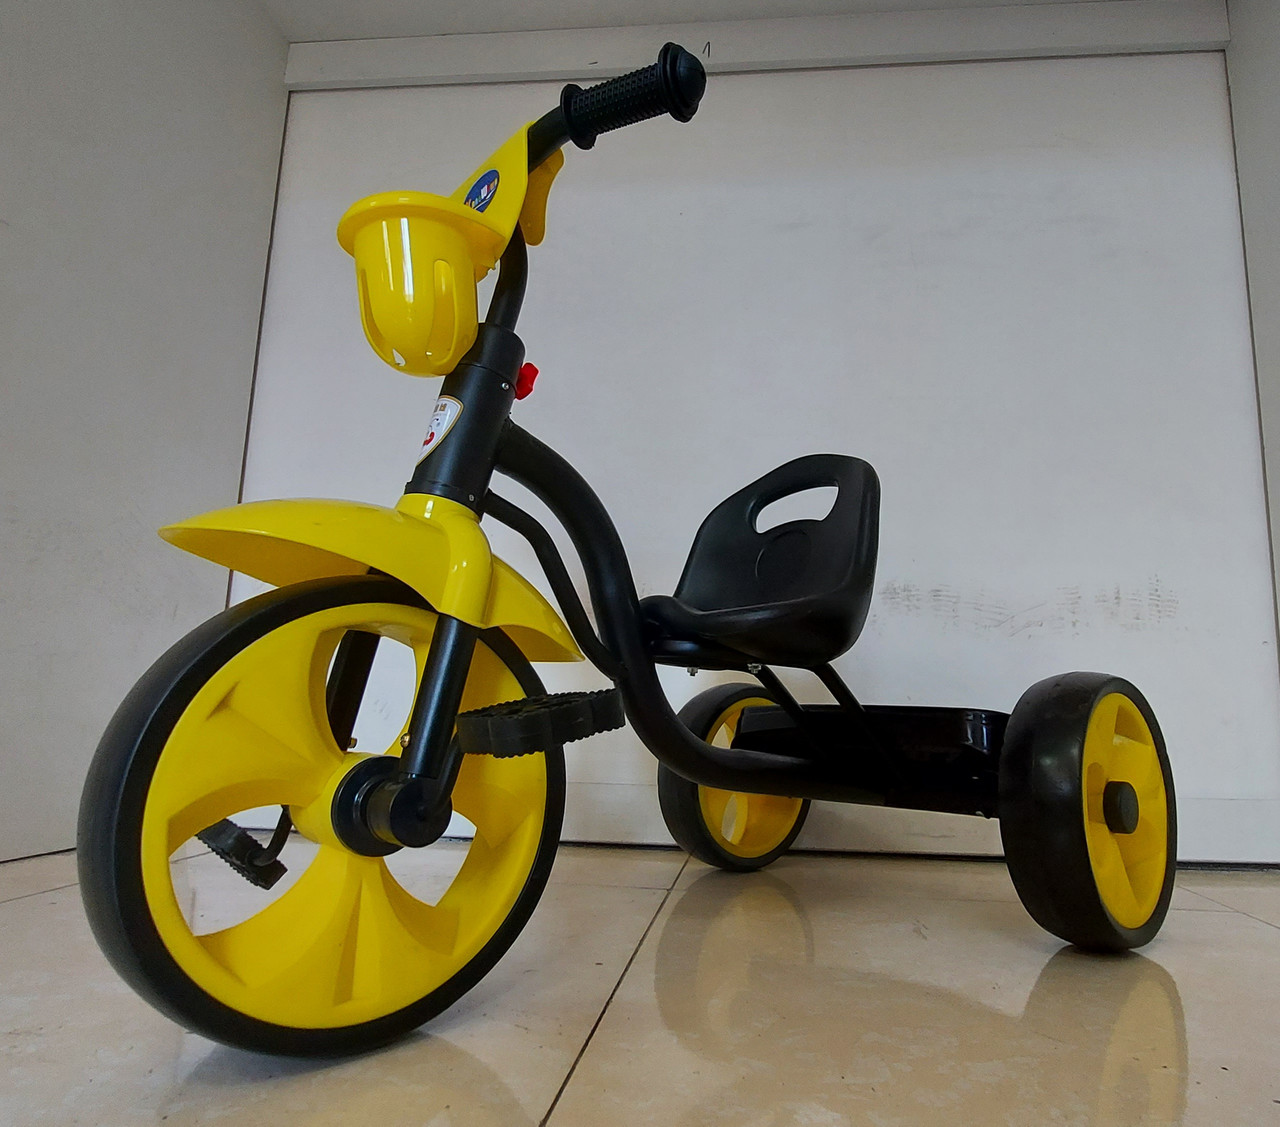 Красивый детский трехколесный велосипед "Hulk". Черно-желтый.